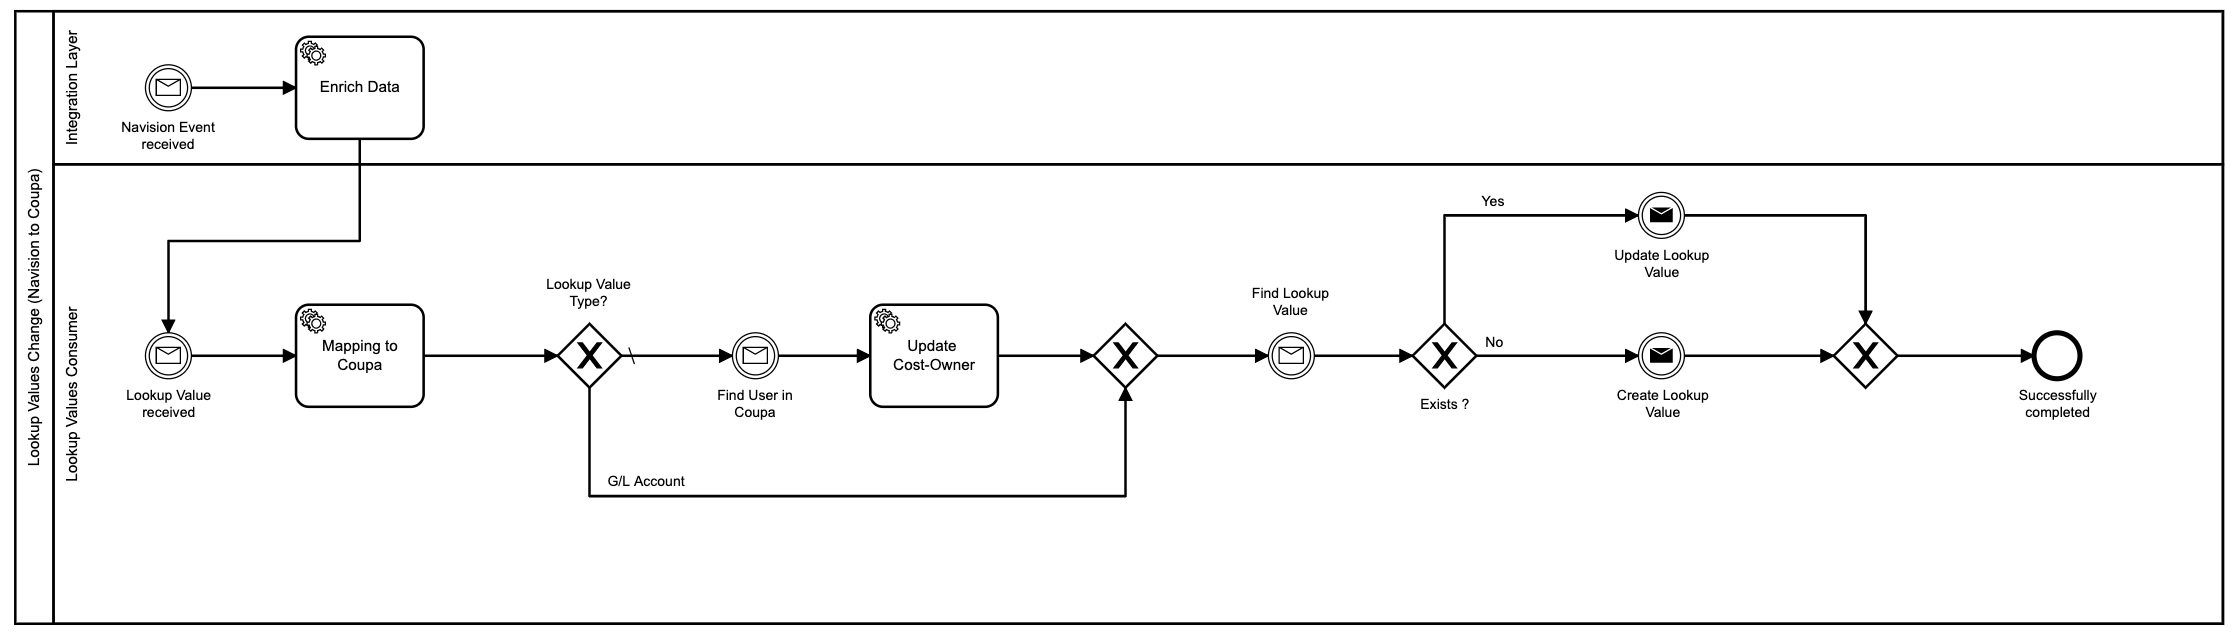 process-flow-diagram.png